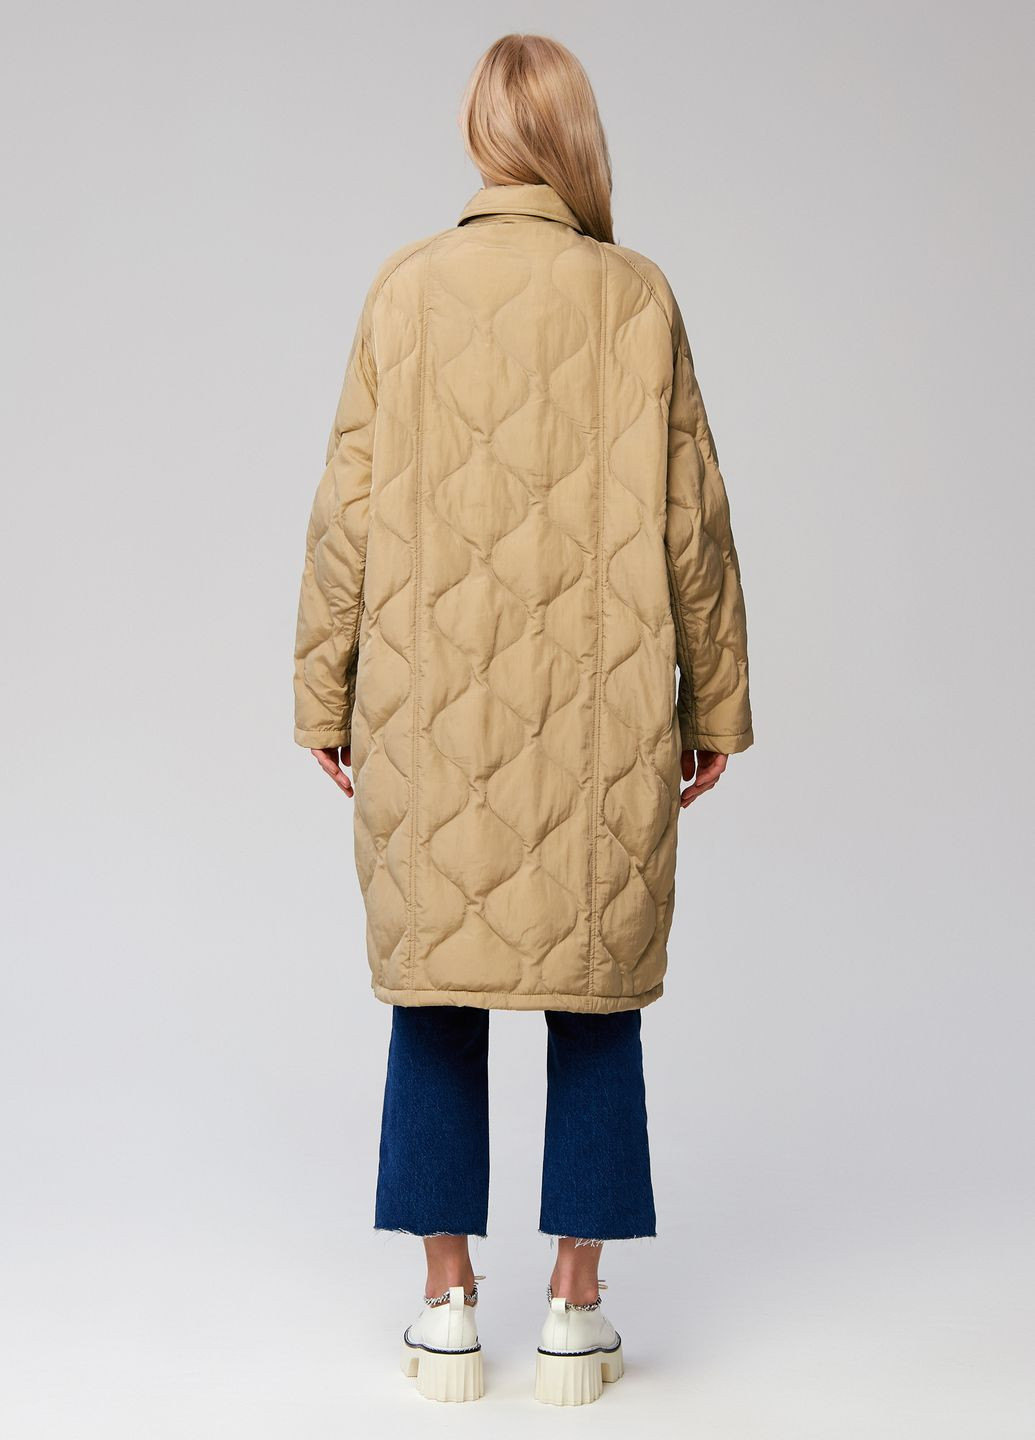 Бежевое демисезонное Стеганное пальто модель 889 оверсайз Viva